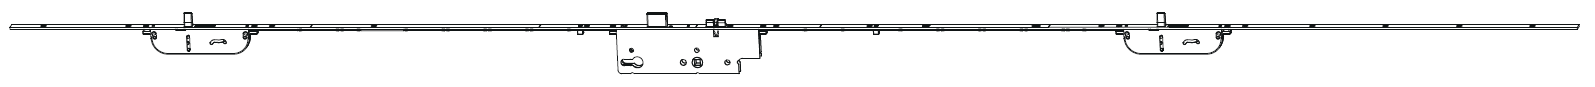 MAICO -  Serratura Multipunto PROTECT meccanica con scrocco catenaccio 2 punzoni - h min - max 1950 - 2400 - entrata 50 - frontale 16 - interasse 85